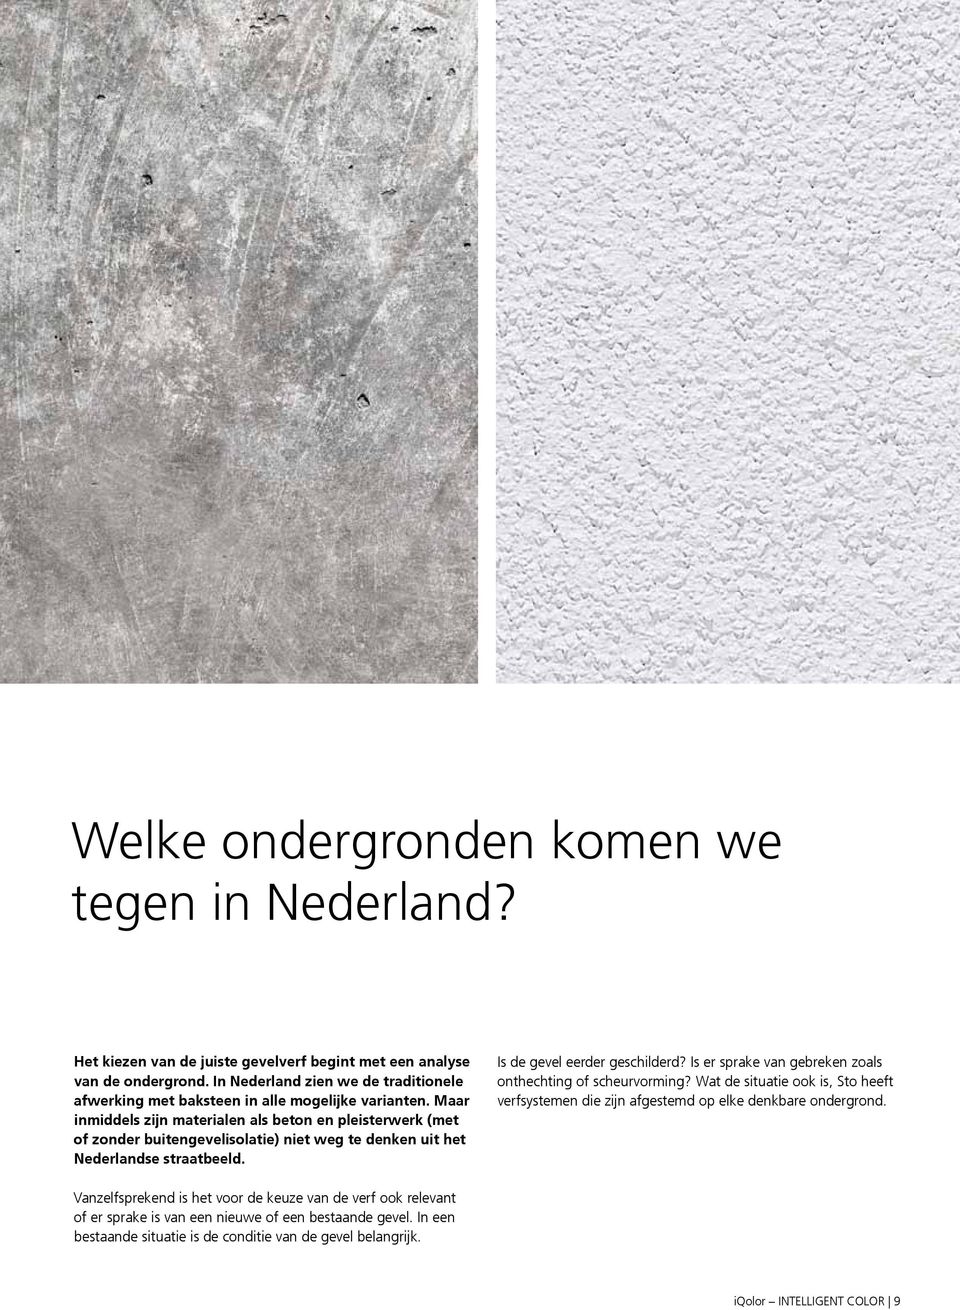 Maar inmiddels zijn erialen als beton en pleisterwerk (met of zonder buitengevelisolatie) niet weg te denken uit het Nederlandse straatbeeld. Is de gevel eerder geschilderd?